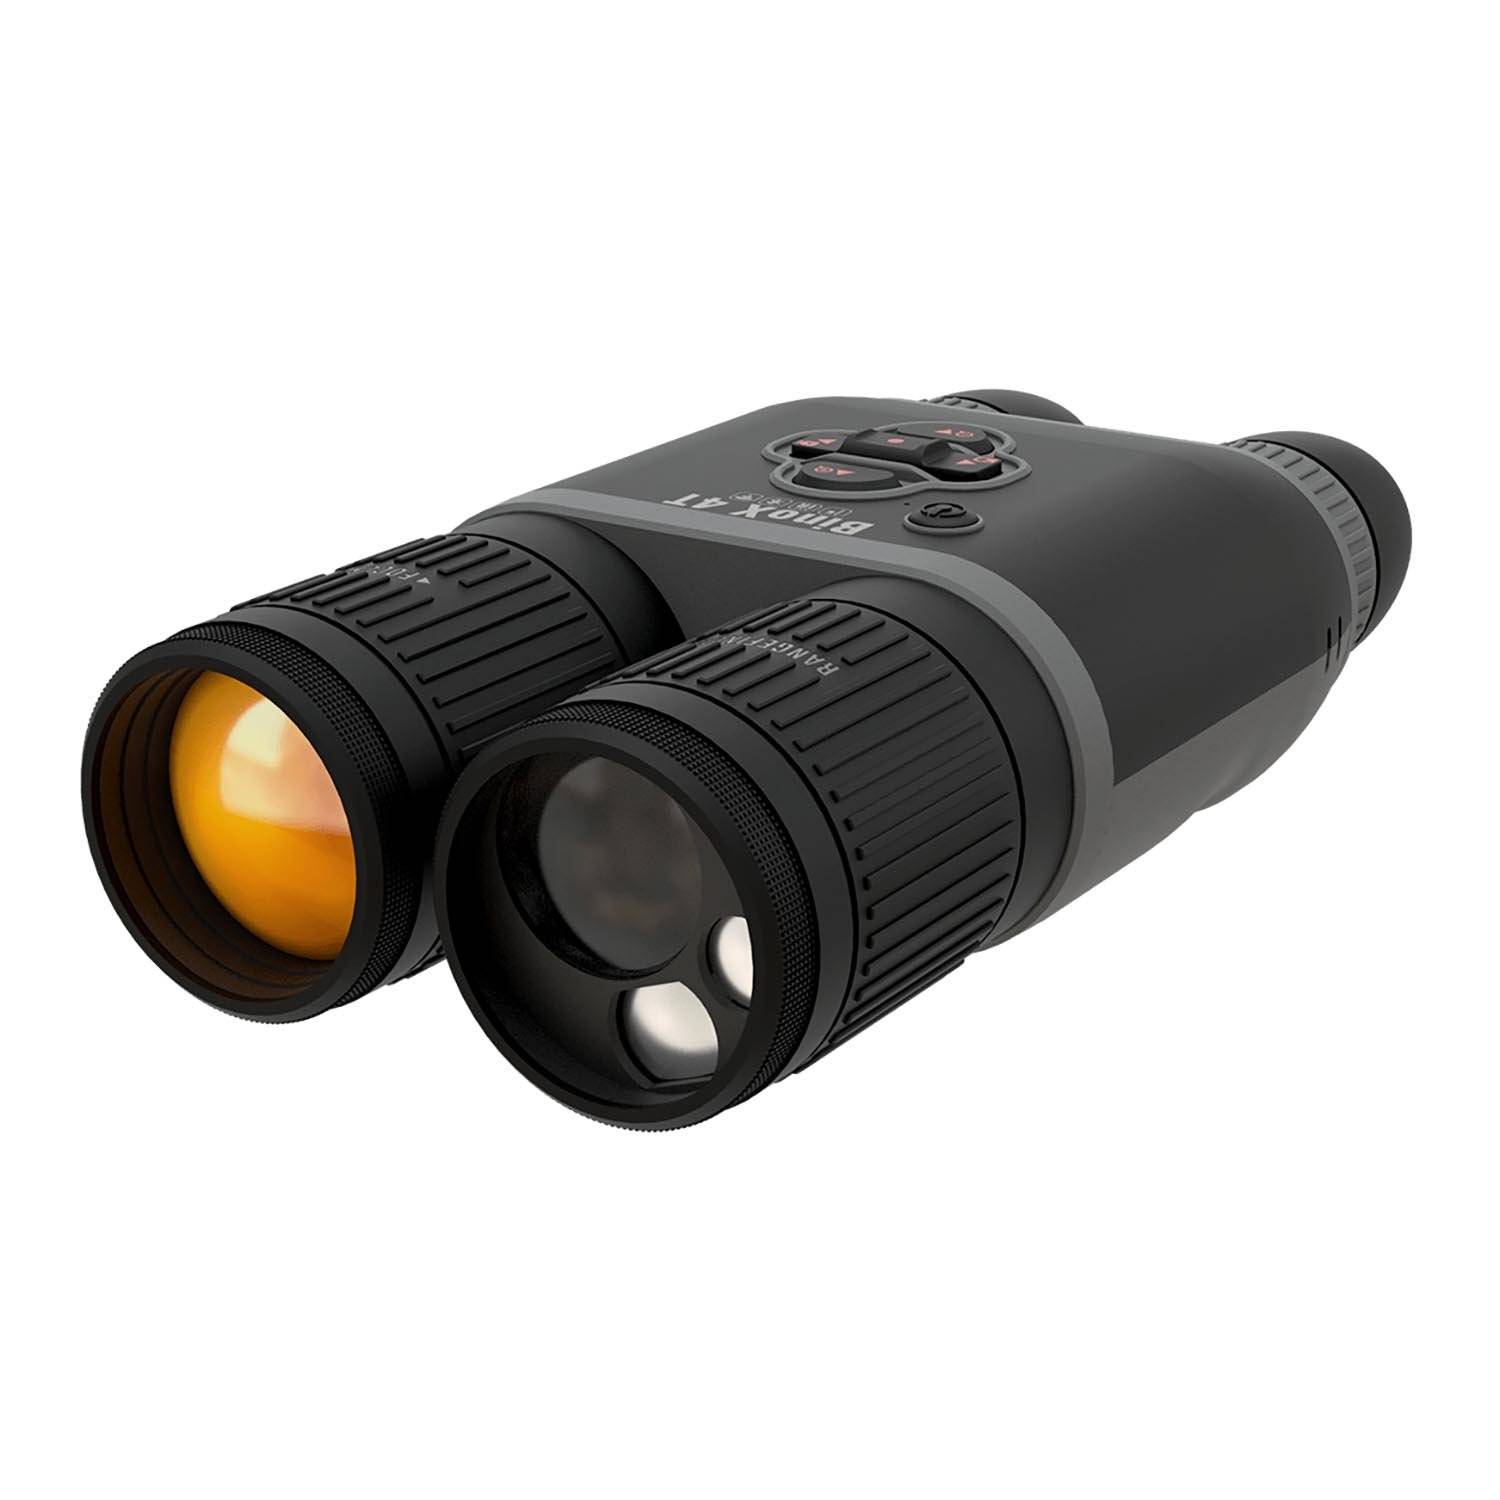 A.T.N. Binox 4T 384 4.5-18X HD Thermal Binoculars